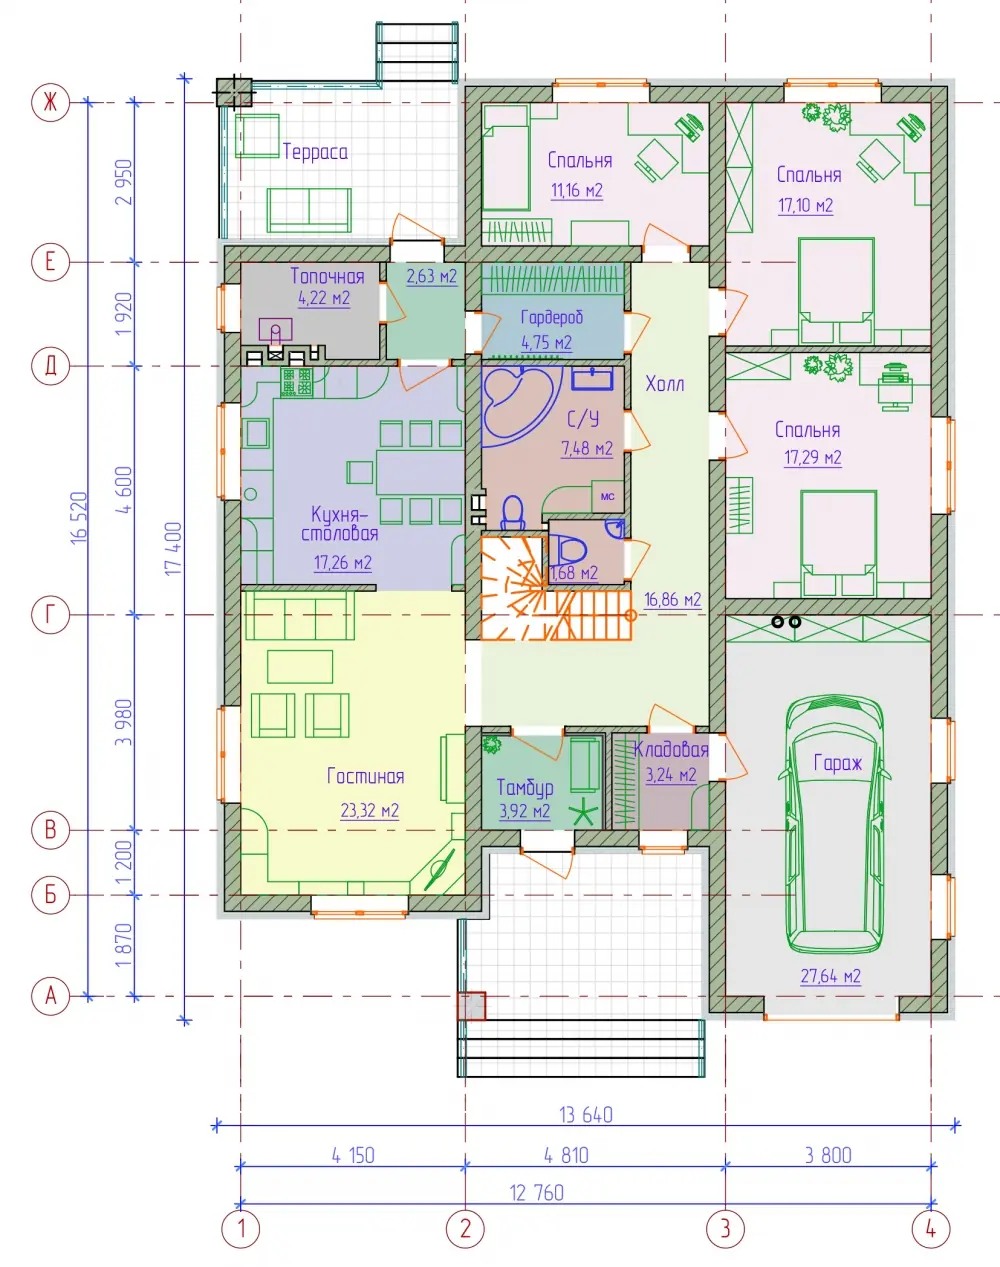 Планировка 1-го этажа кирпичного бунгало с эксплуатируемым чердаком. Проект № 090-36